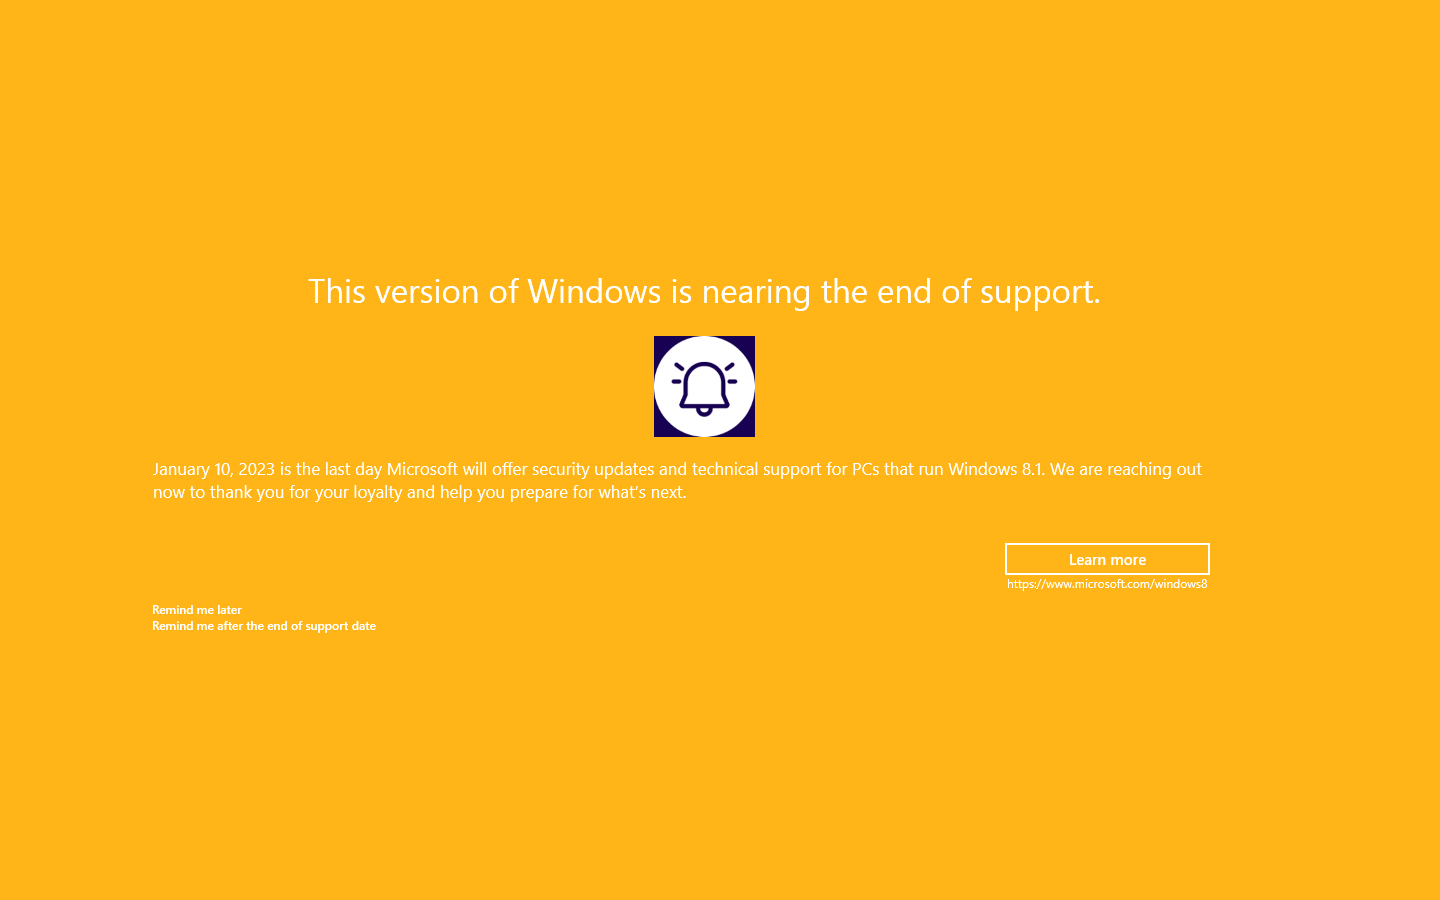 Windows 8.1 - Informacja o zbliżającym się zakończeniu wsparcia